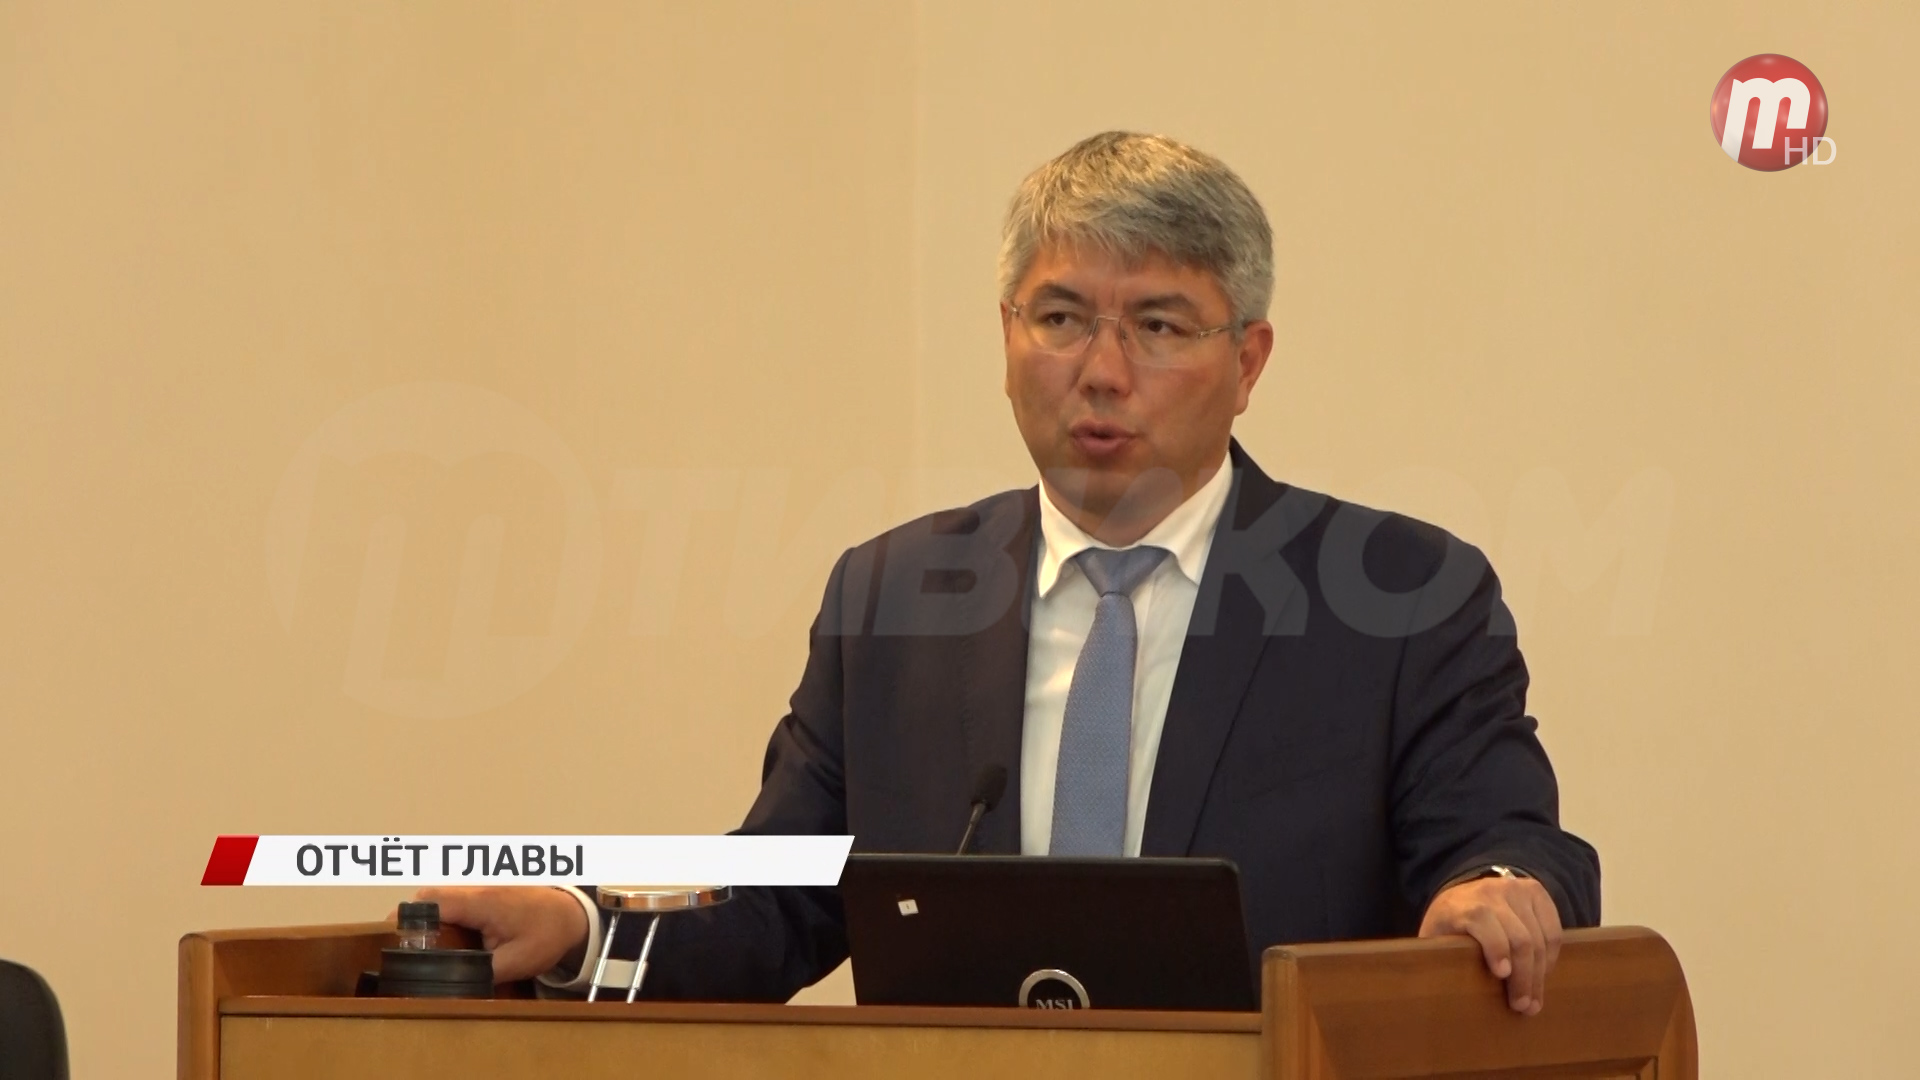 Глава республики Алексей Цыденов выступил с отчетом за прошлый год на сессии Народного Хурала